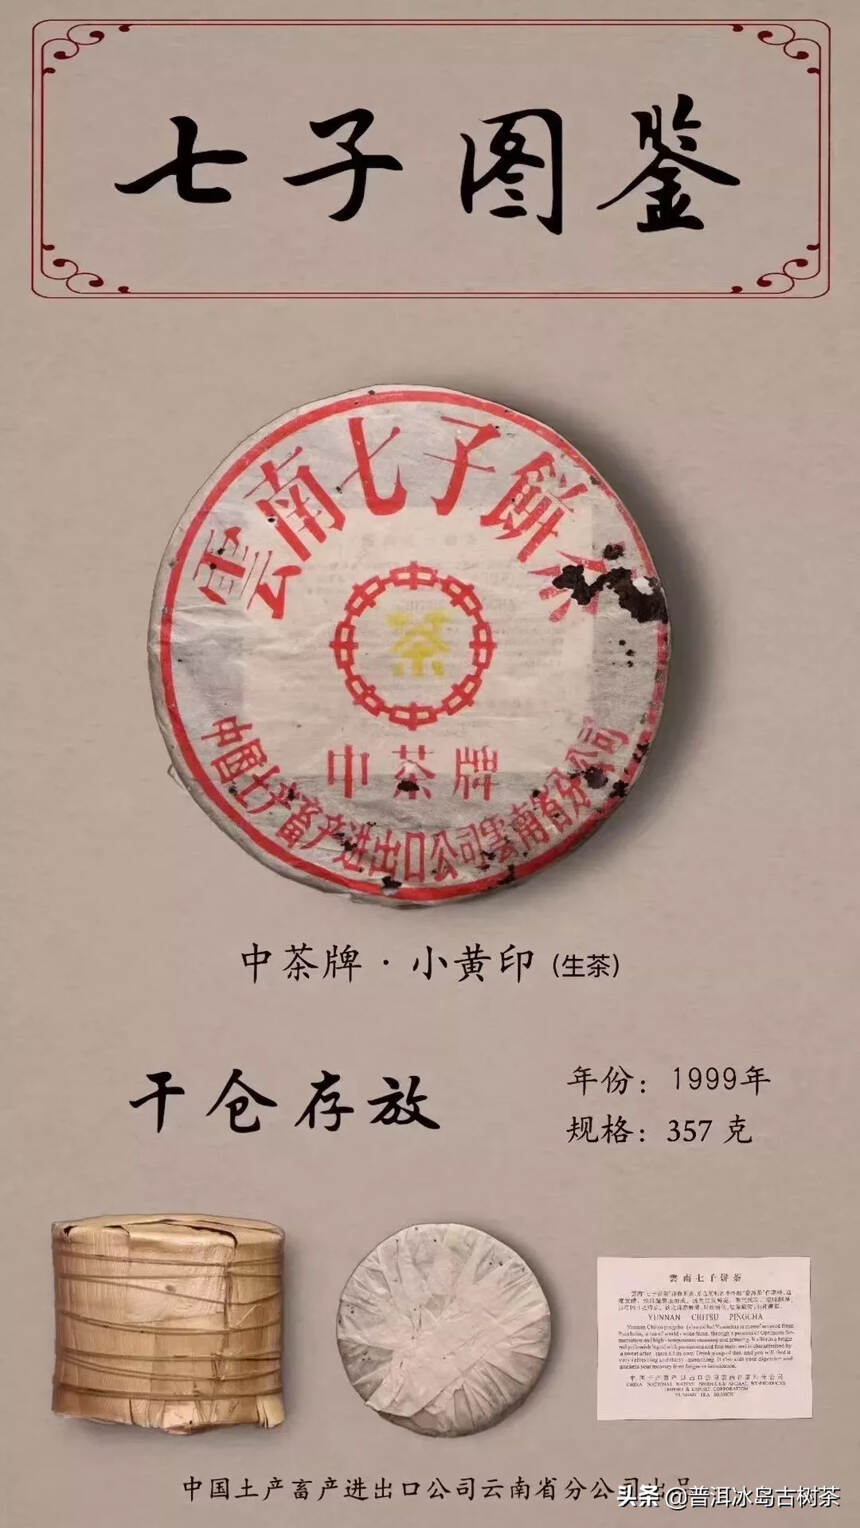 1999年——中茶牌小黄印青饼
干仓陈放，饼型松紧适